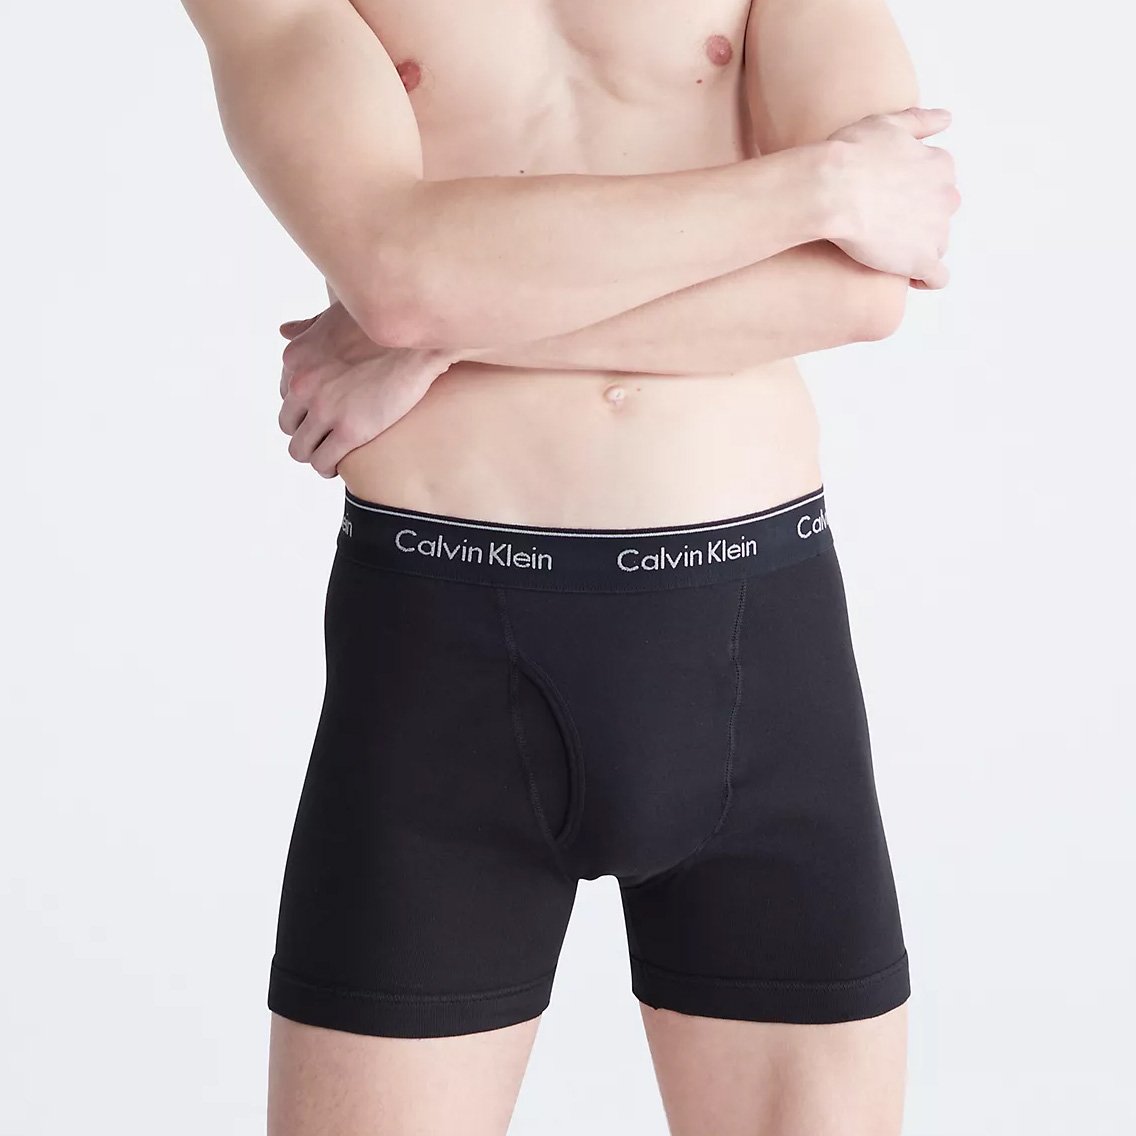 Calvin Klein(カルバンクライン)[NB4003-001]:ボクサーパンツ,男性下着 ...